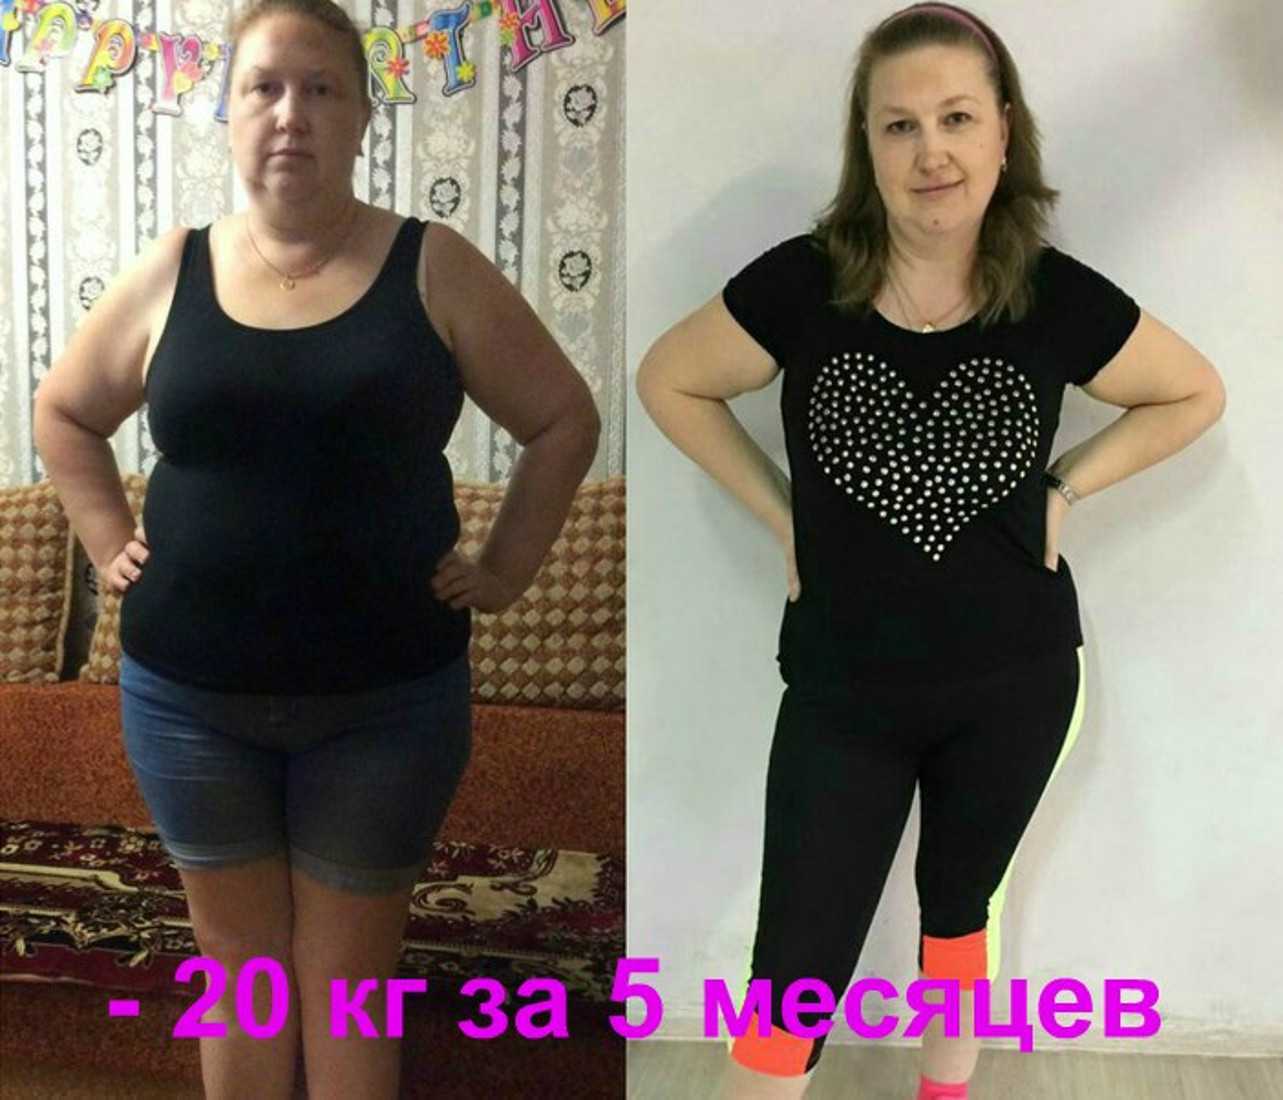 Похудела на 30 кг за 2 месяца. Результаты похудения. Похудение до и после. Похудение на 20 кг за месяц. Похудение полгода.